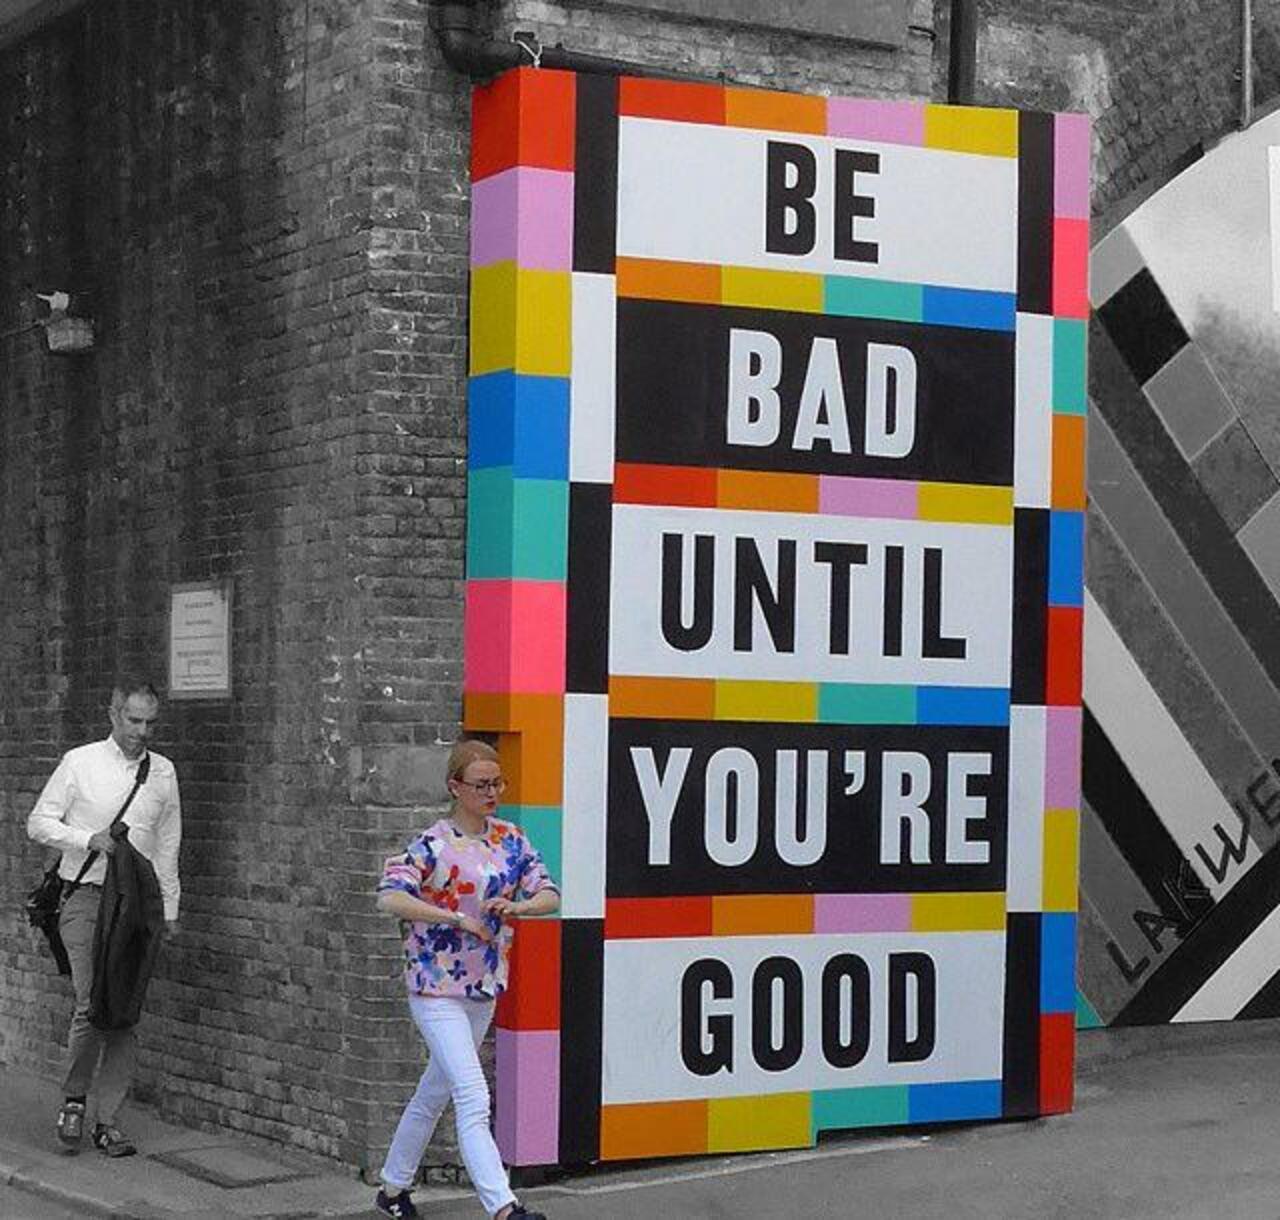 Be bad until you're good... 

Street Art by Lakwena in London 
#art #arte #graffiti #streetart http://t.co/dyXbta2QUj